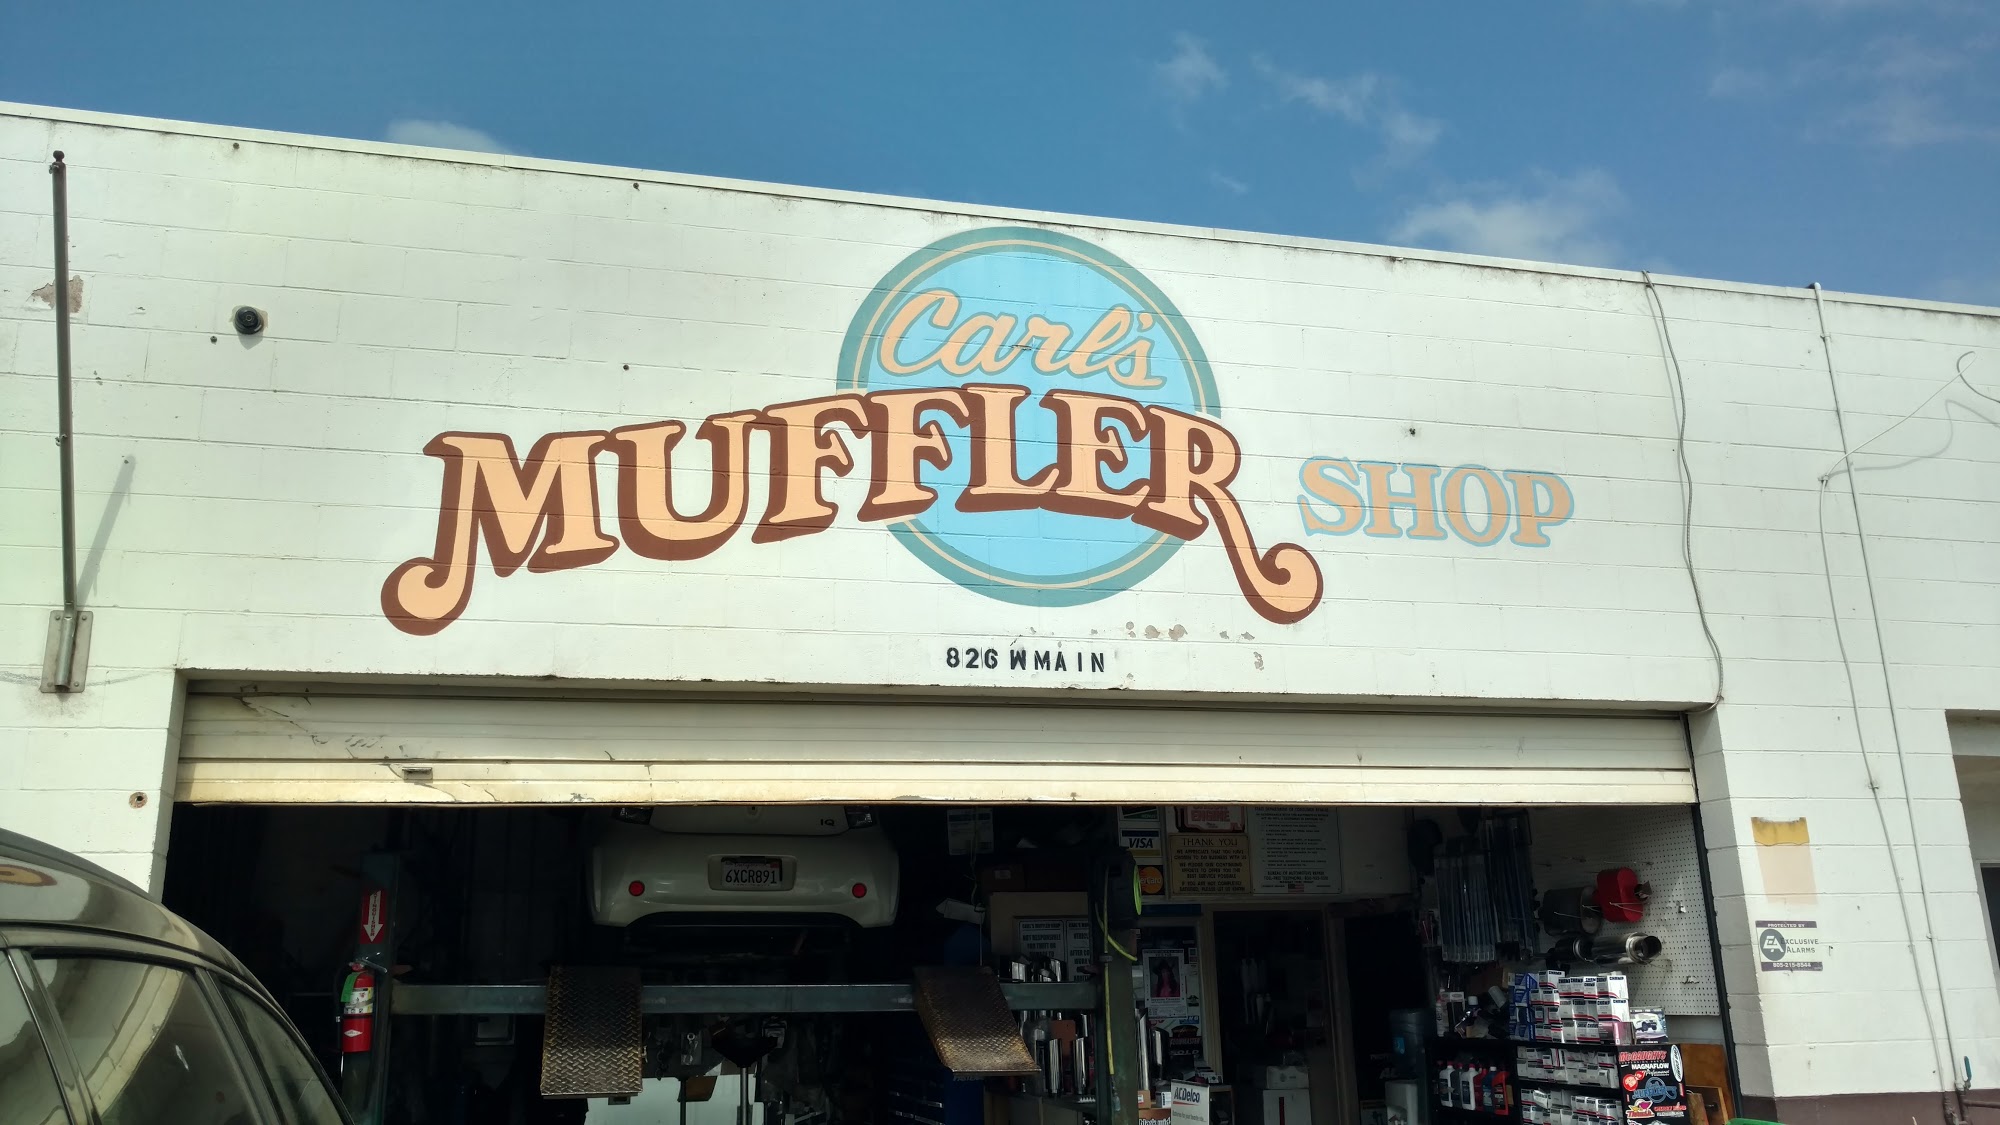 Carl's Muffler Shop